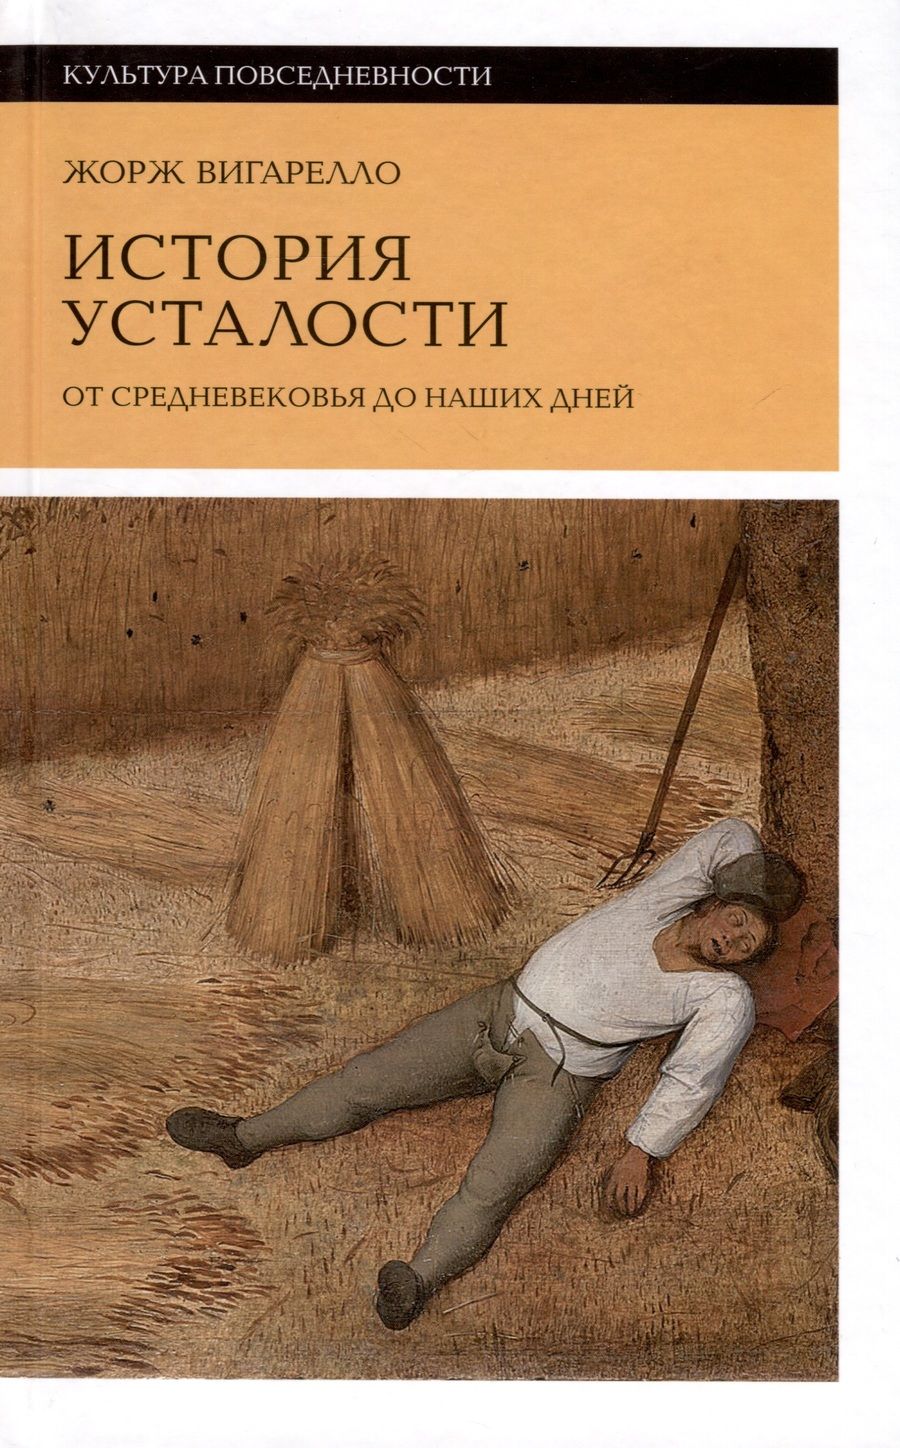 Обложка книги "Вигарелло: История усталости от Средневековья до наших дней"